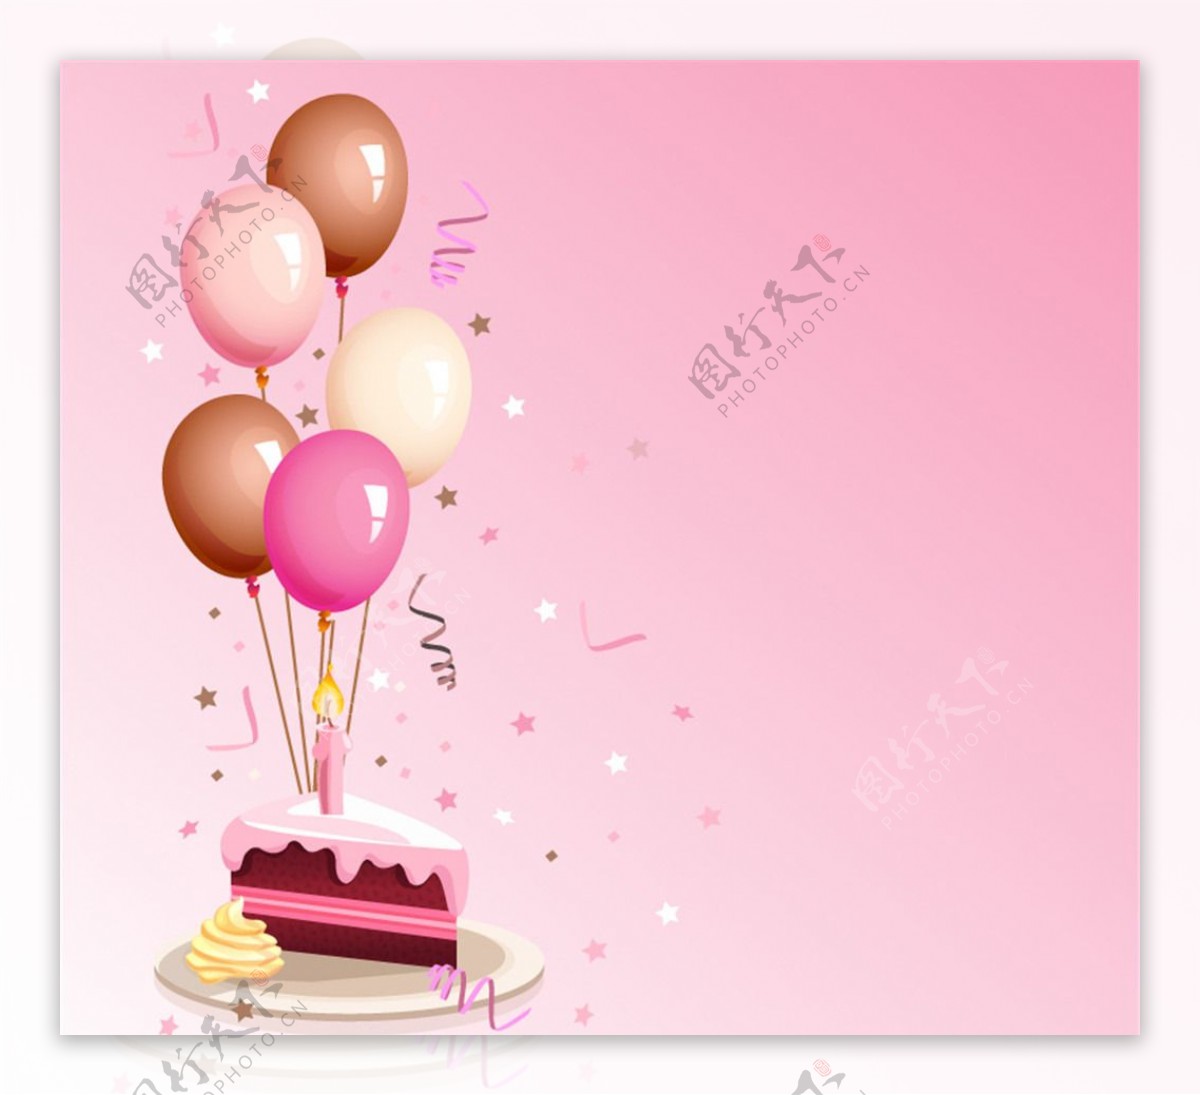 彩色气球与生日蛋糕矢量素材